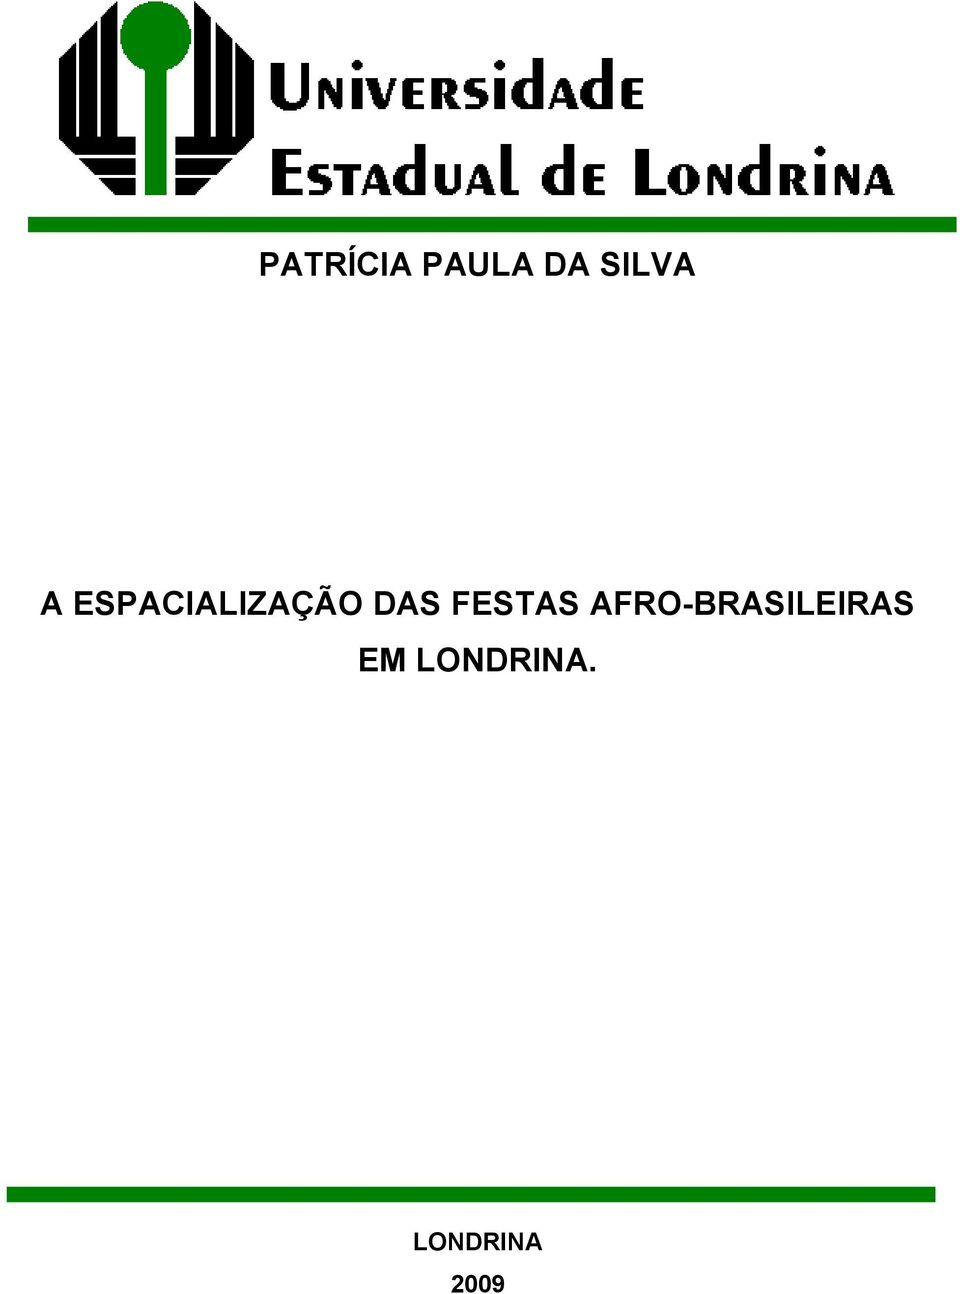 FESTAS AFRO-BRASILEIRAS